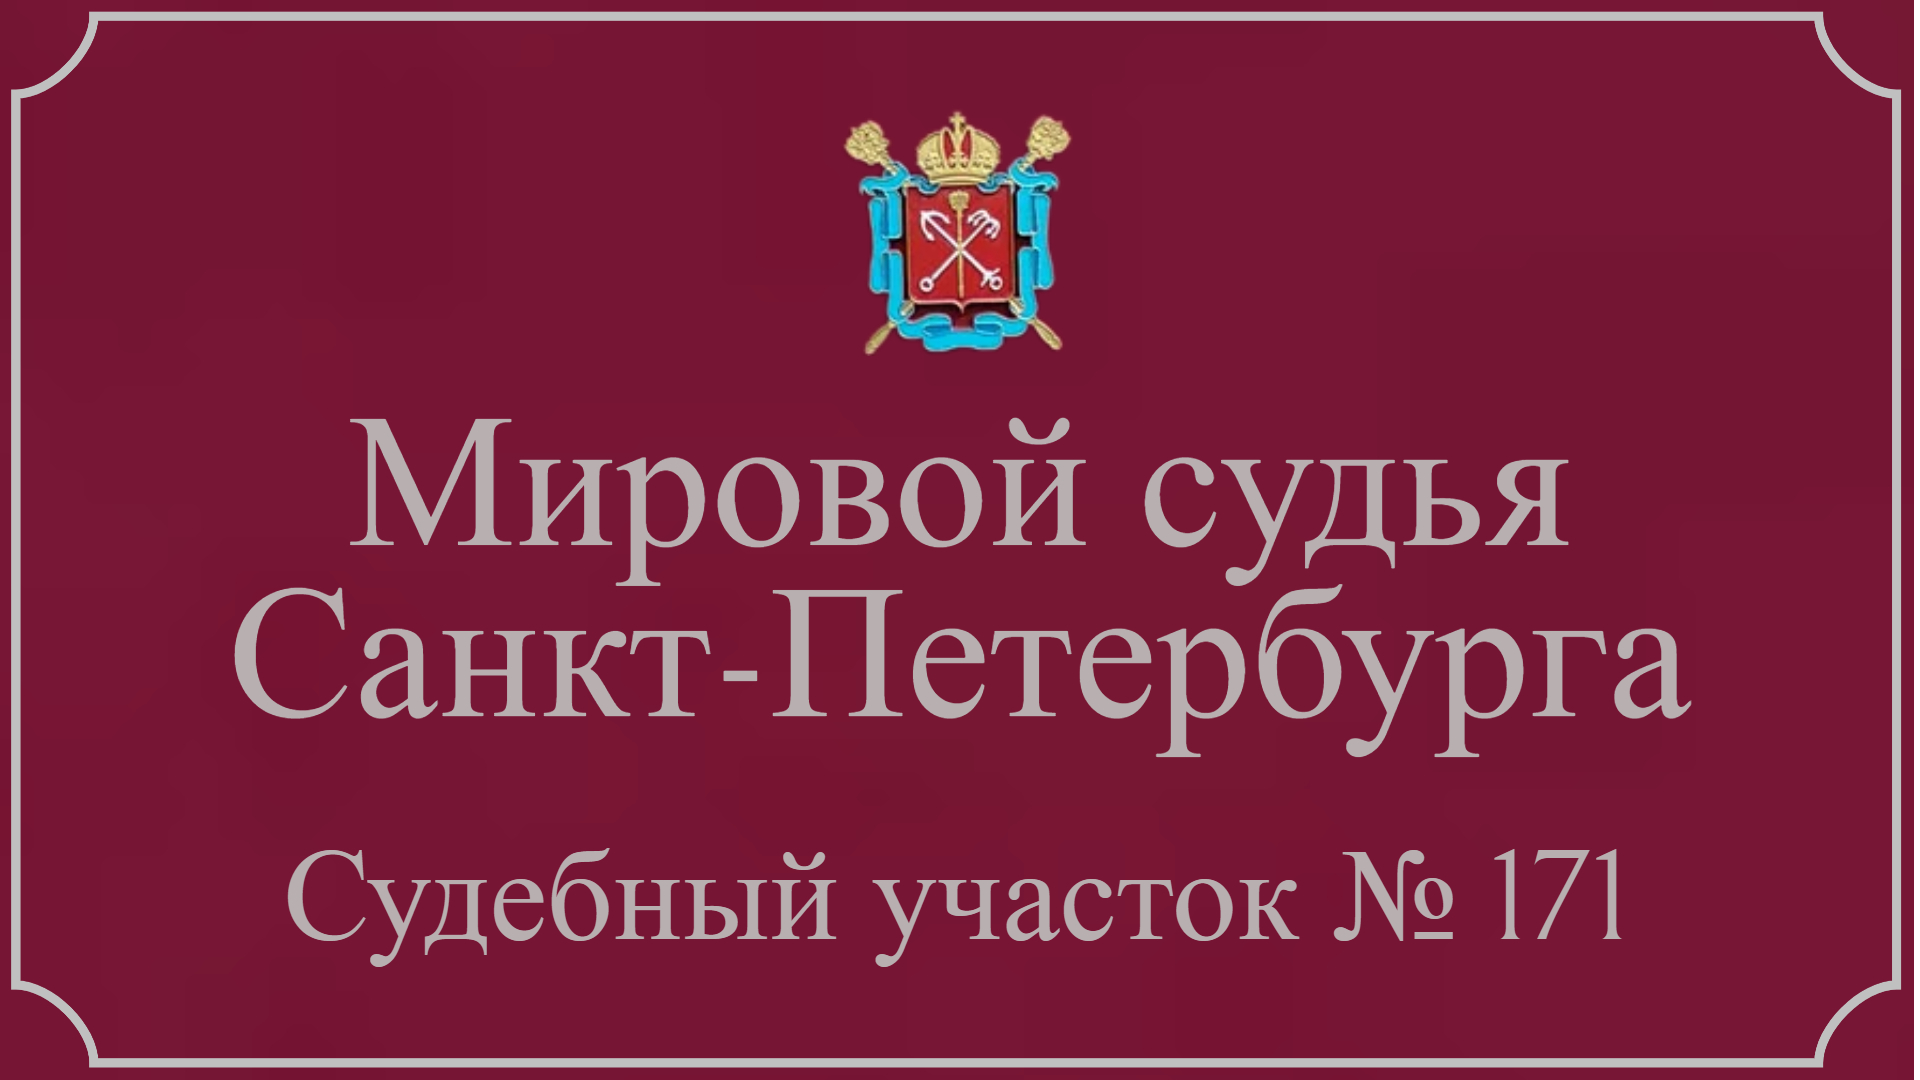 Информация по 171 судебному участку в Санкт-Петербурге.